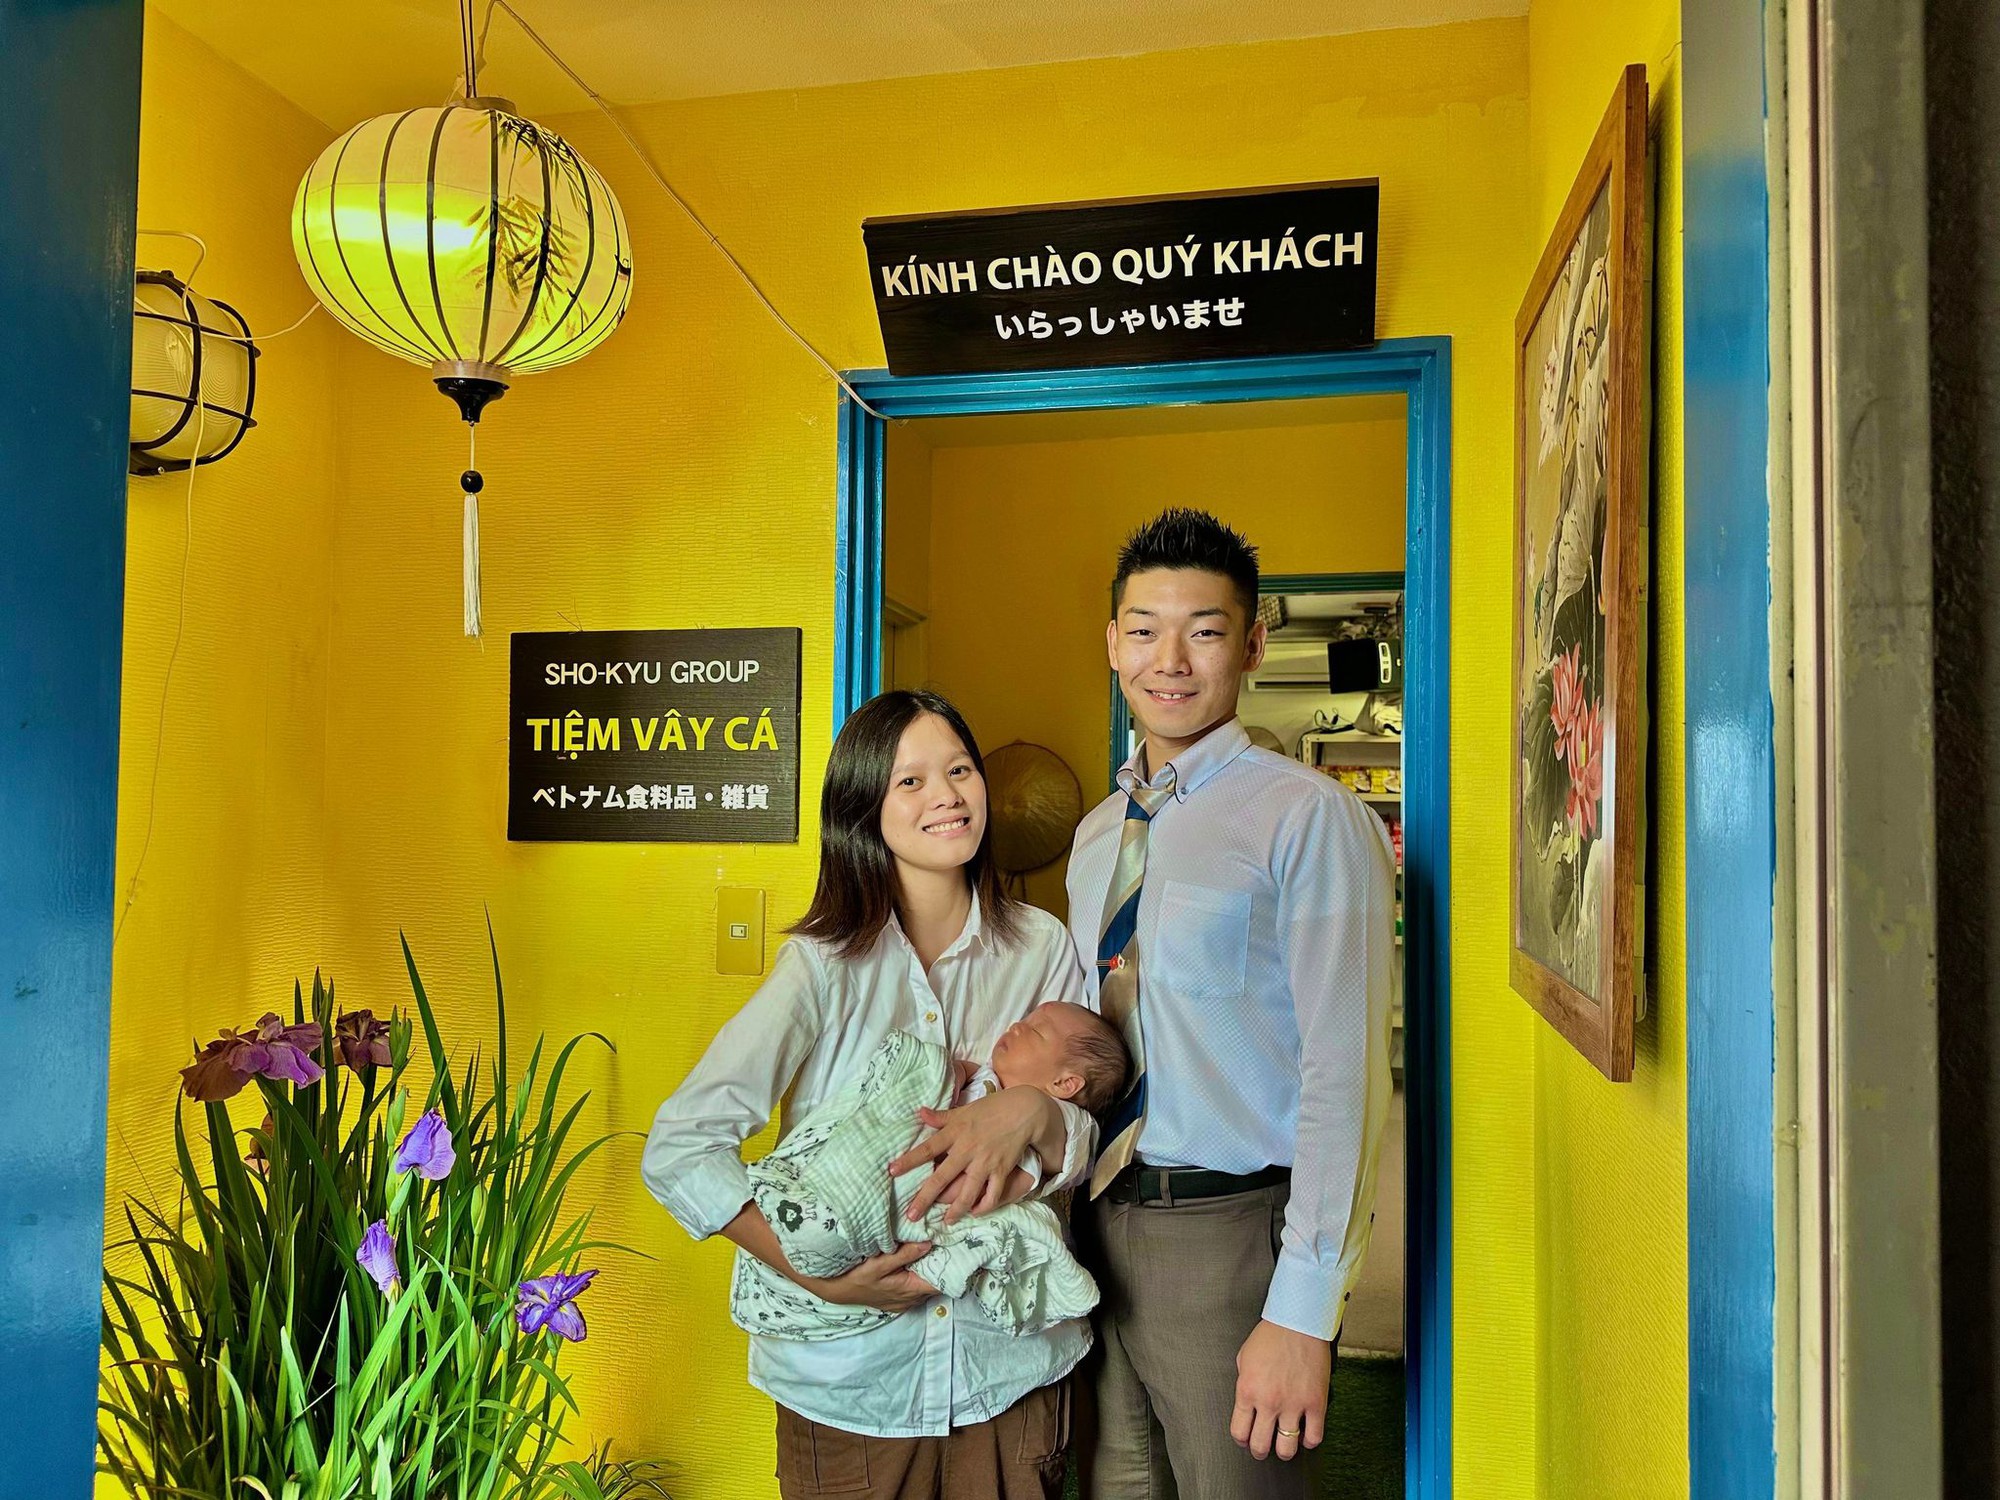 Chàng rể người Nhật trồng rau Việt quê nhà: Vợ đồng hành, tự hào ẩm thực Việt - Ảnh 4.